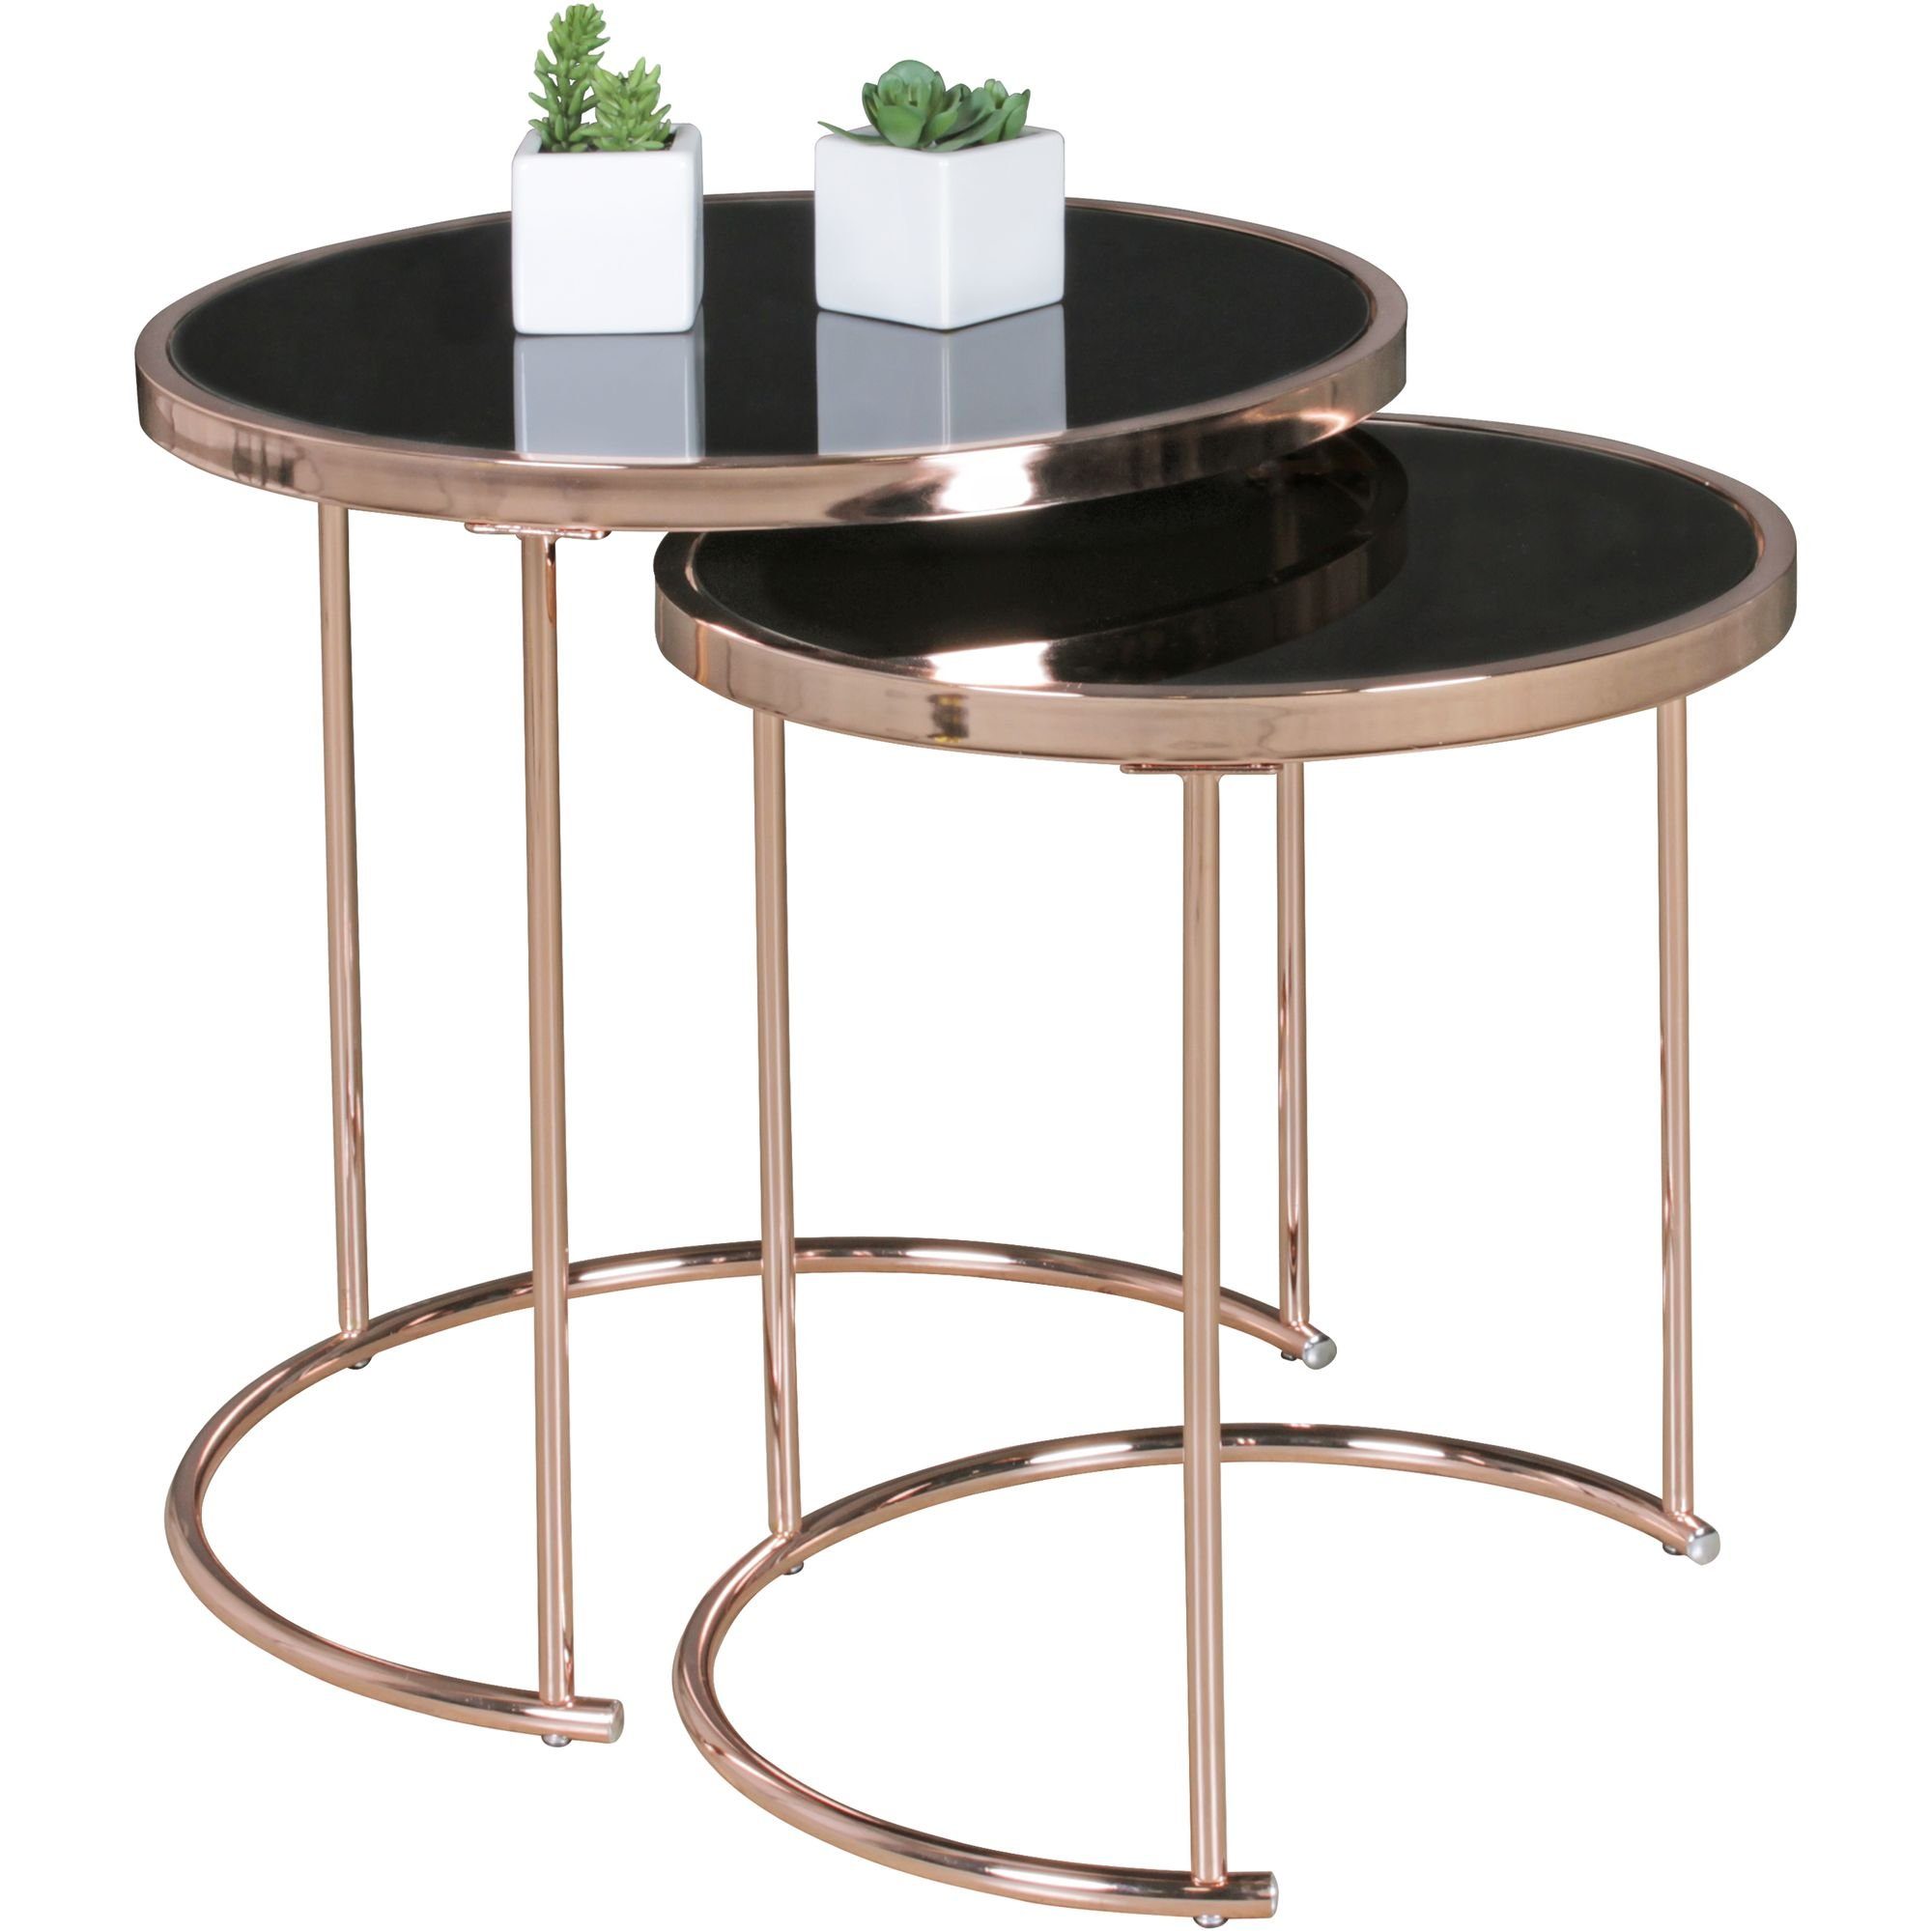 DESIGN Moderner Kupfer-/Schwarz-Design-Esstisch Satztisch Tisch-Set, KADIMA